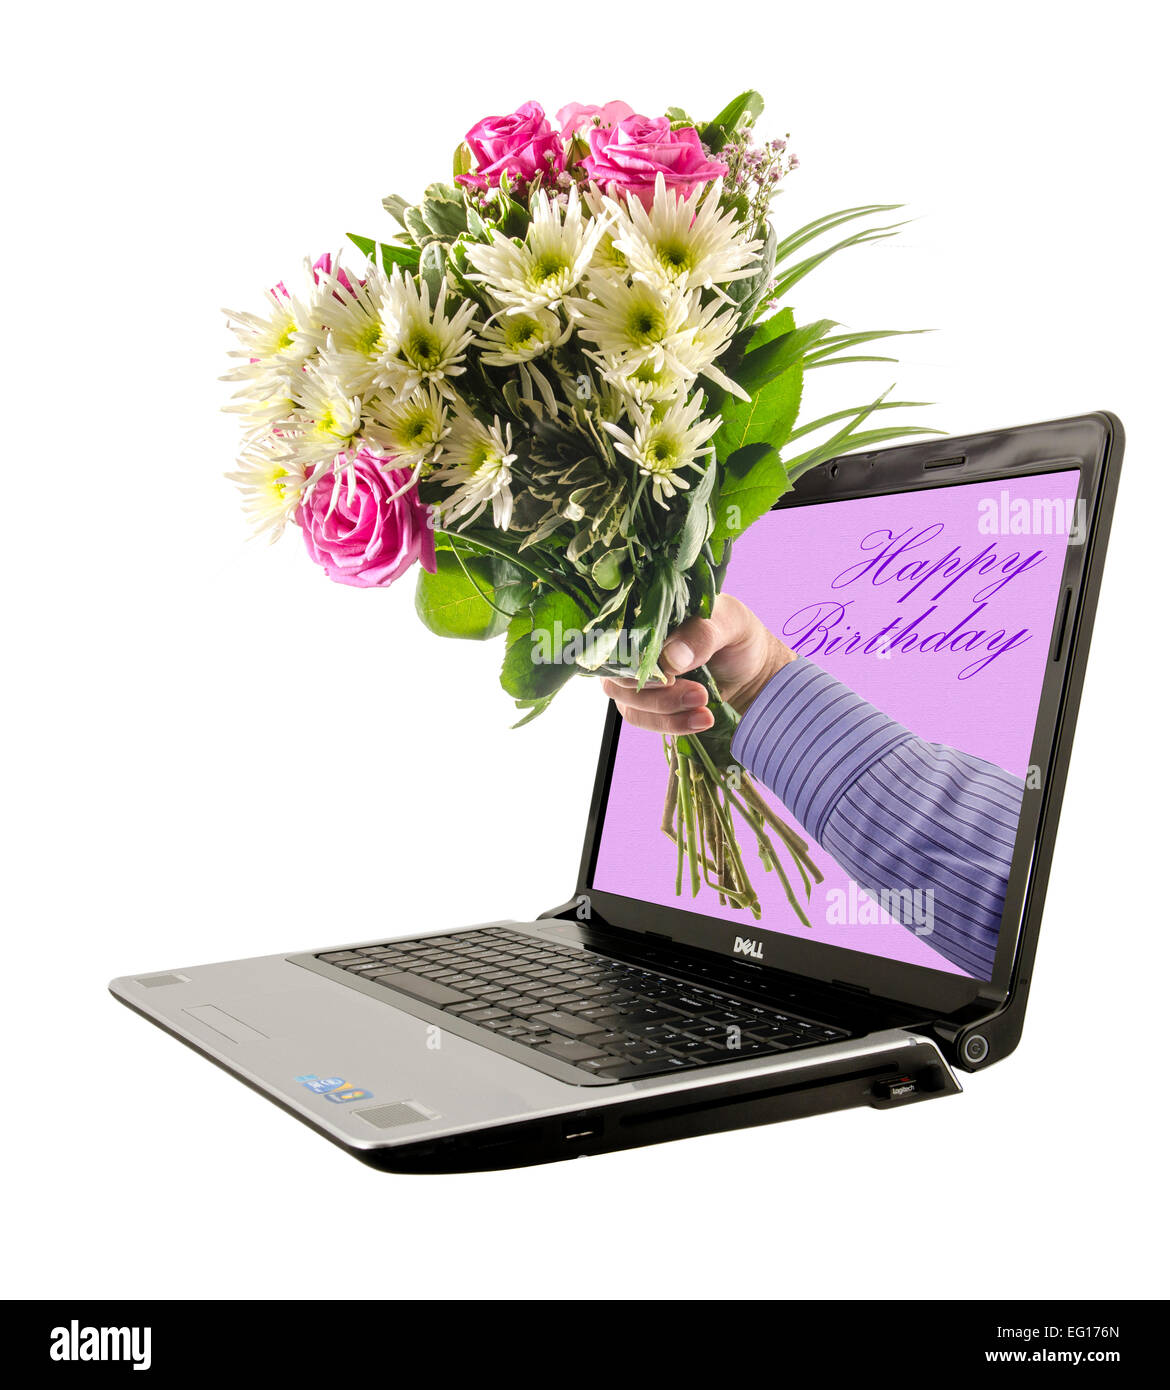 Joyeux anniversaire avec des fleurs Banque d'images détourées - Alamy